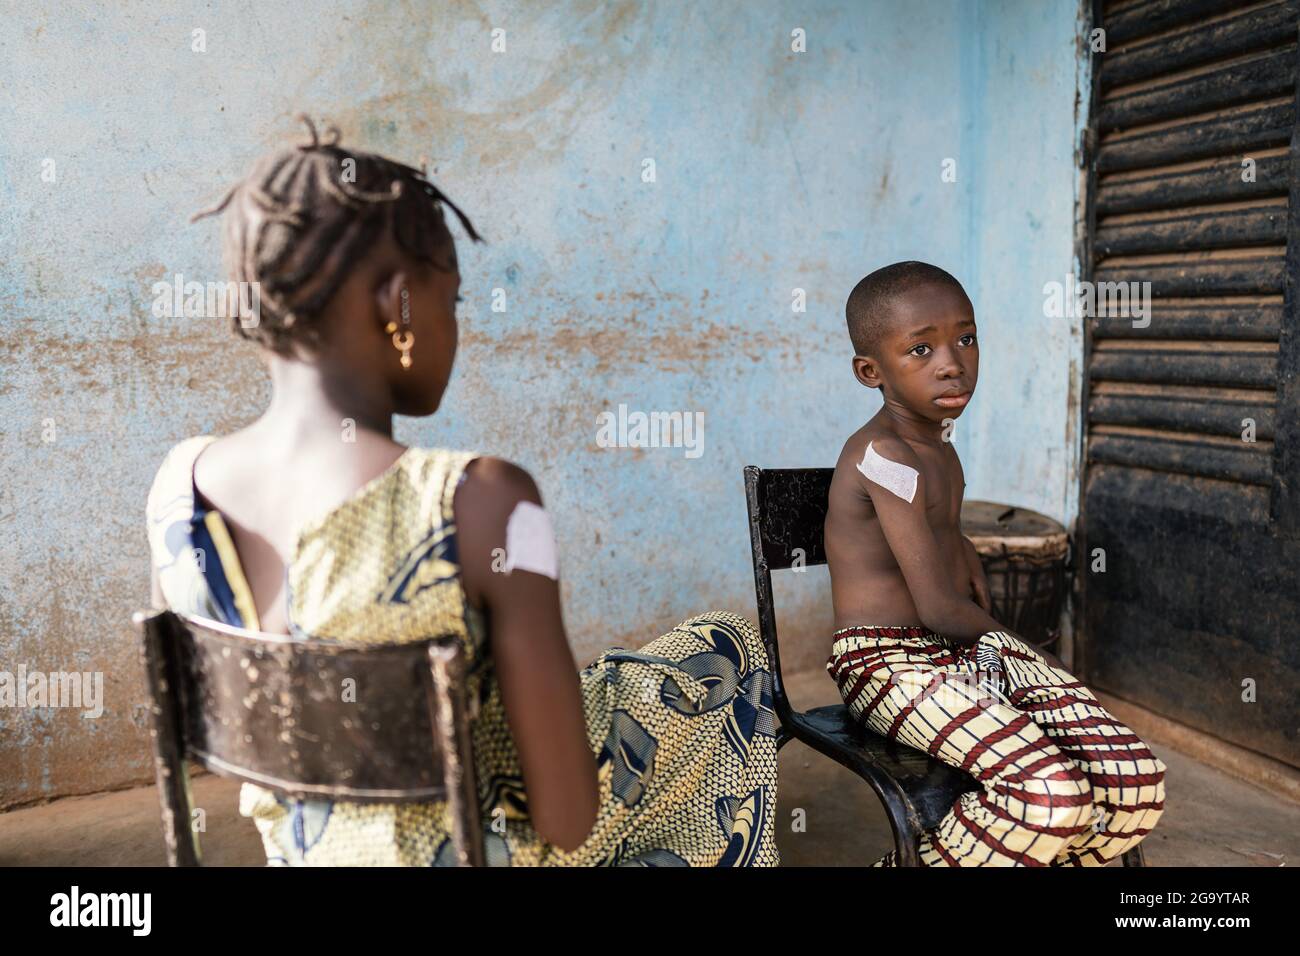 Dans cette image, deux enfants noirs, une fille qui la tourne vers l'appareil photo et un garçon avec une expression painée sur son visage, sont assis à l'extérieur d'une zone rurale Banque D'Images